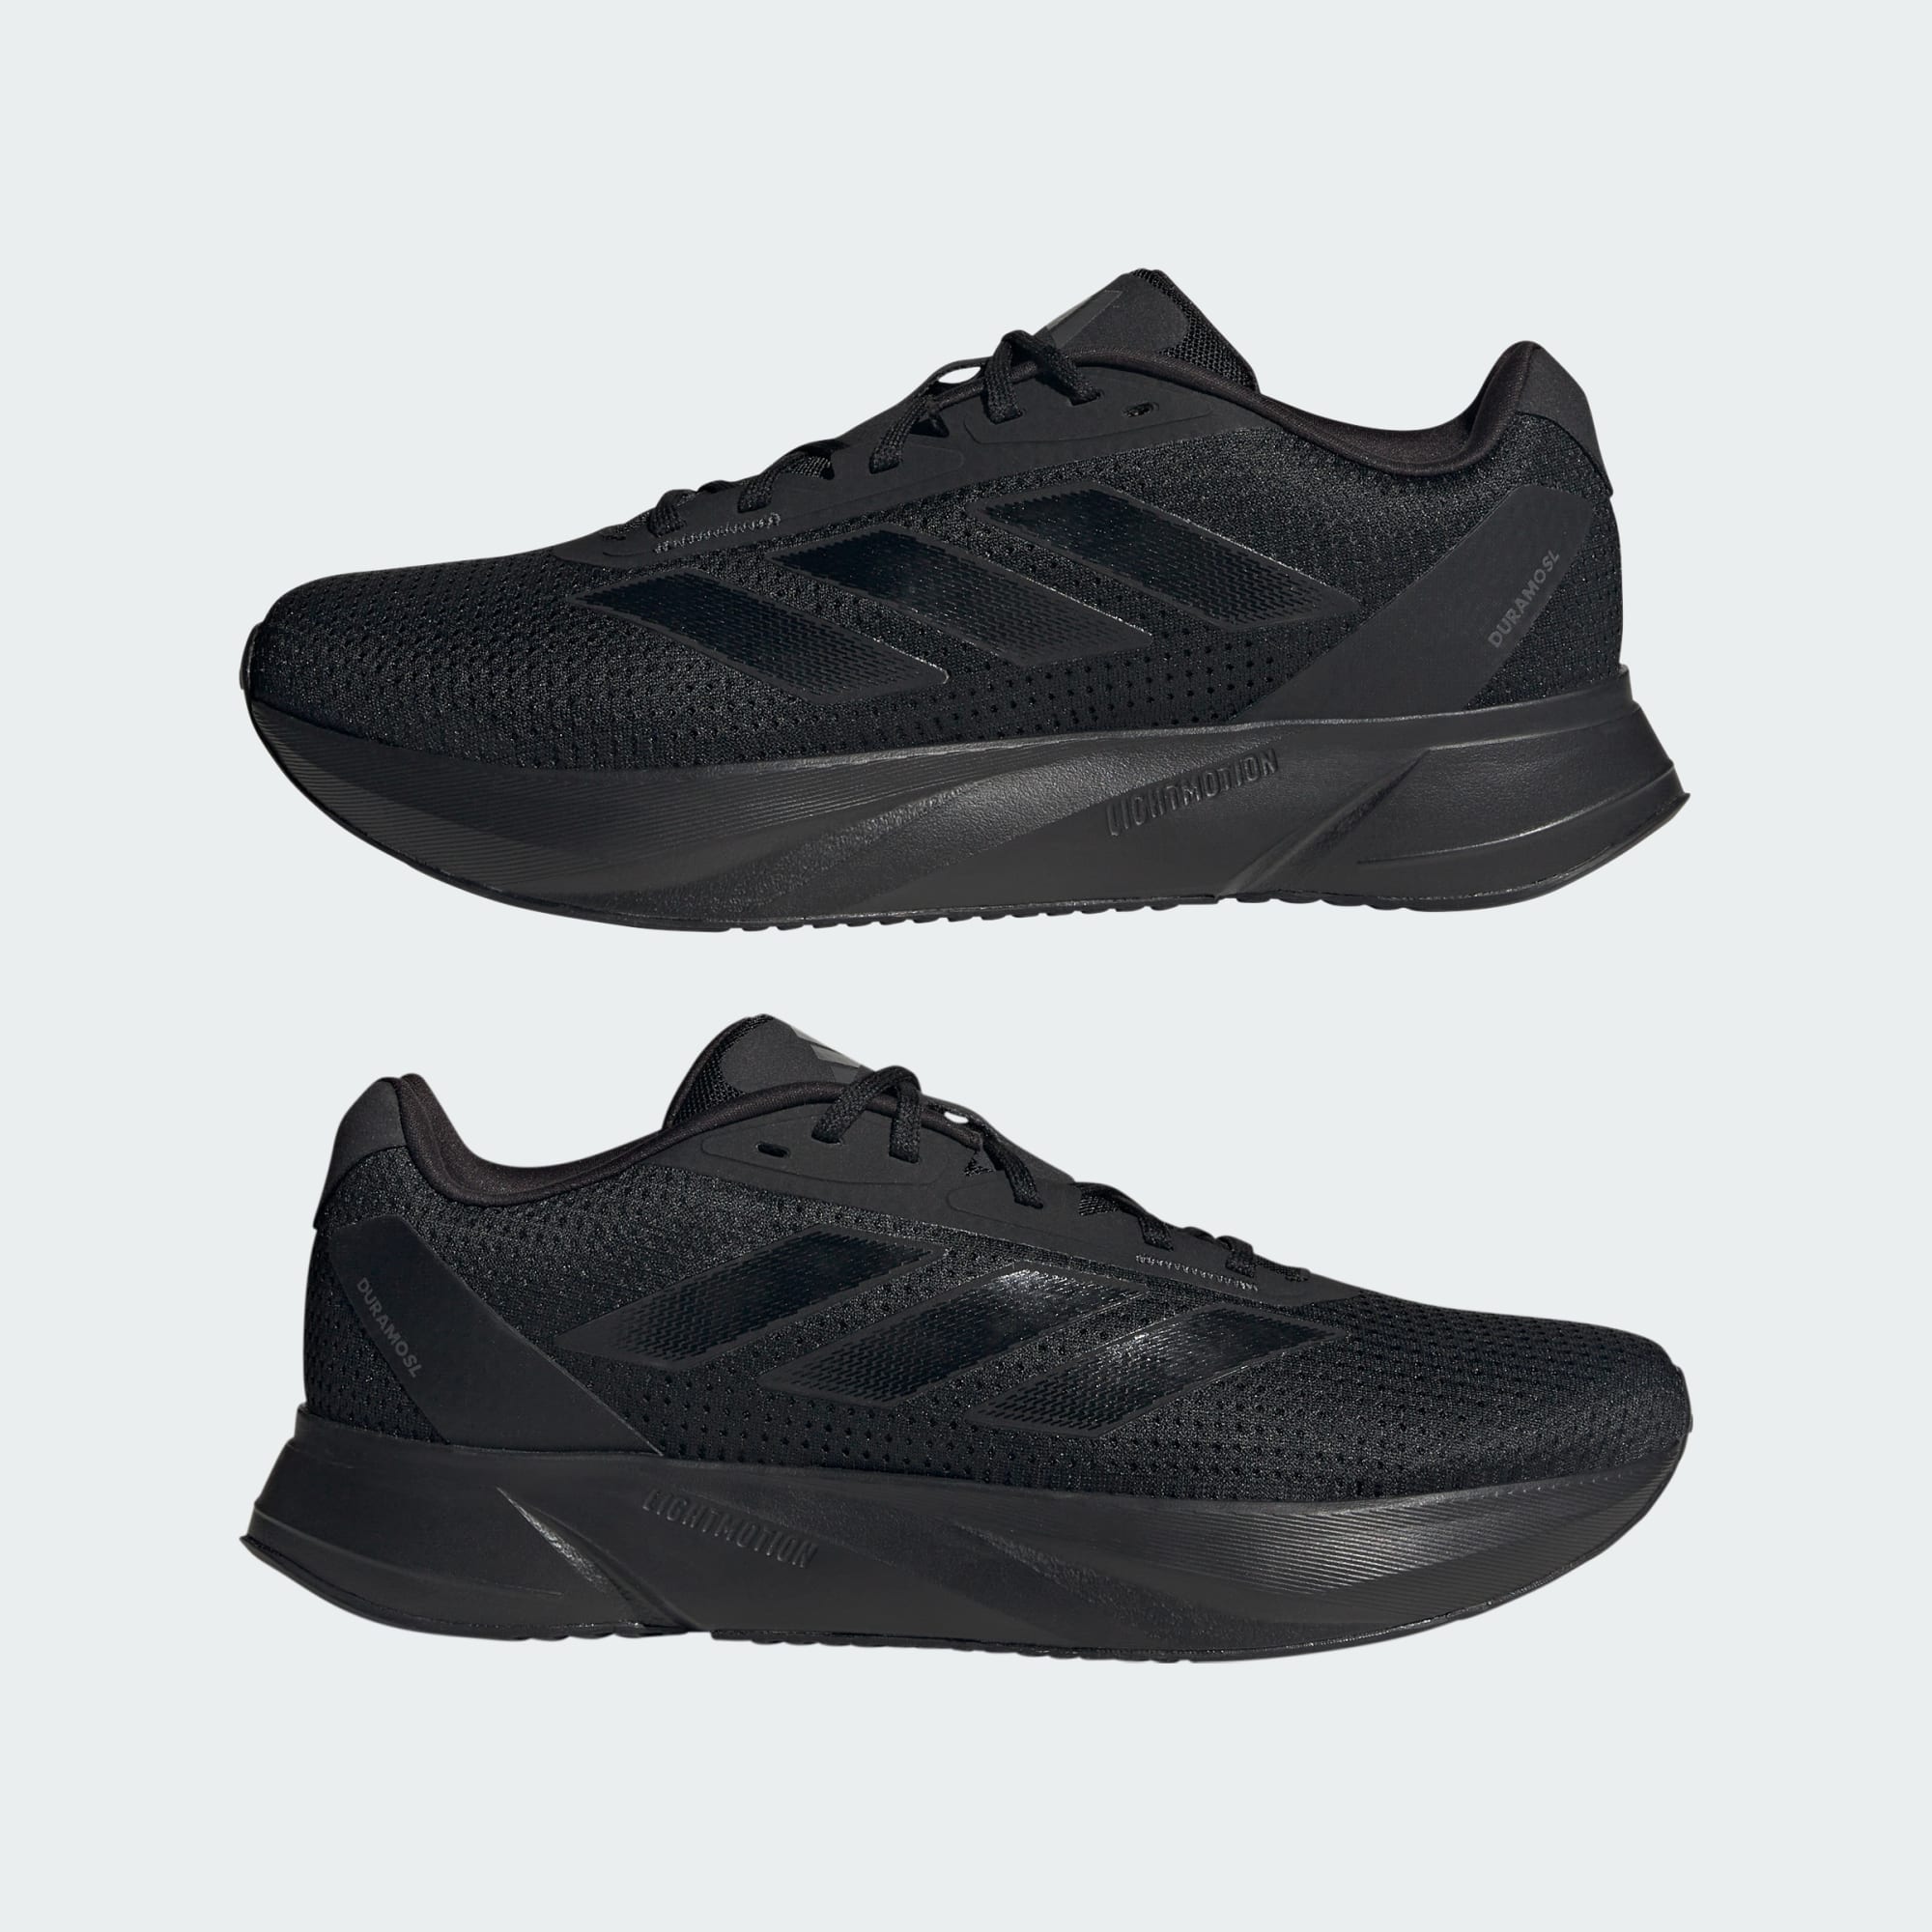 adidas Men's & Women's Duramo SL Running Shoes (Standard, Wide) $29.75 + Free Shipping